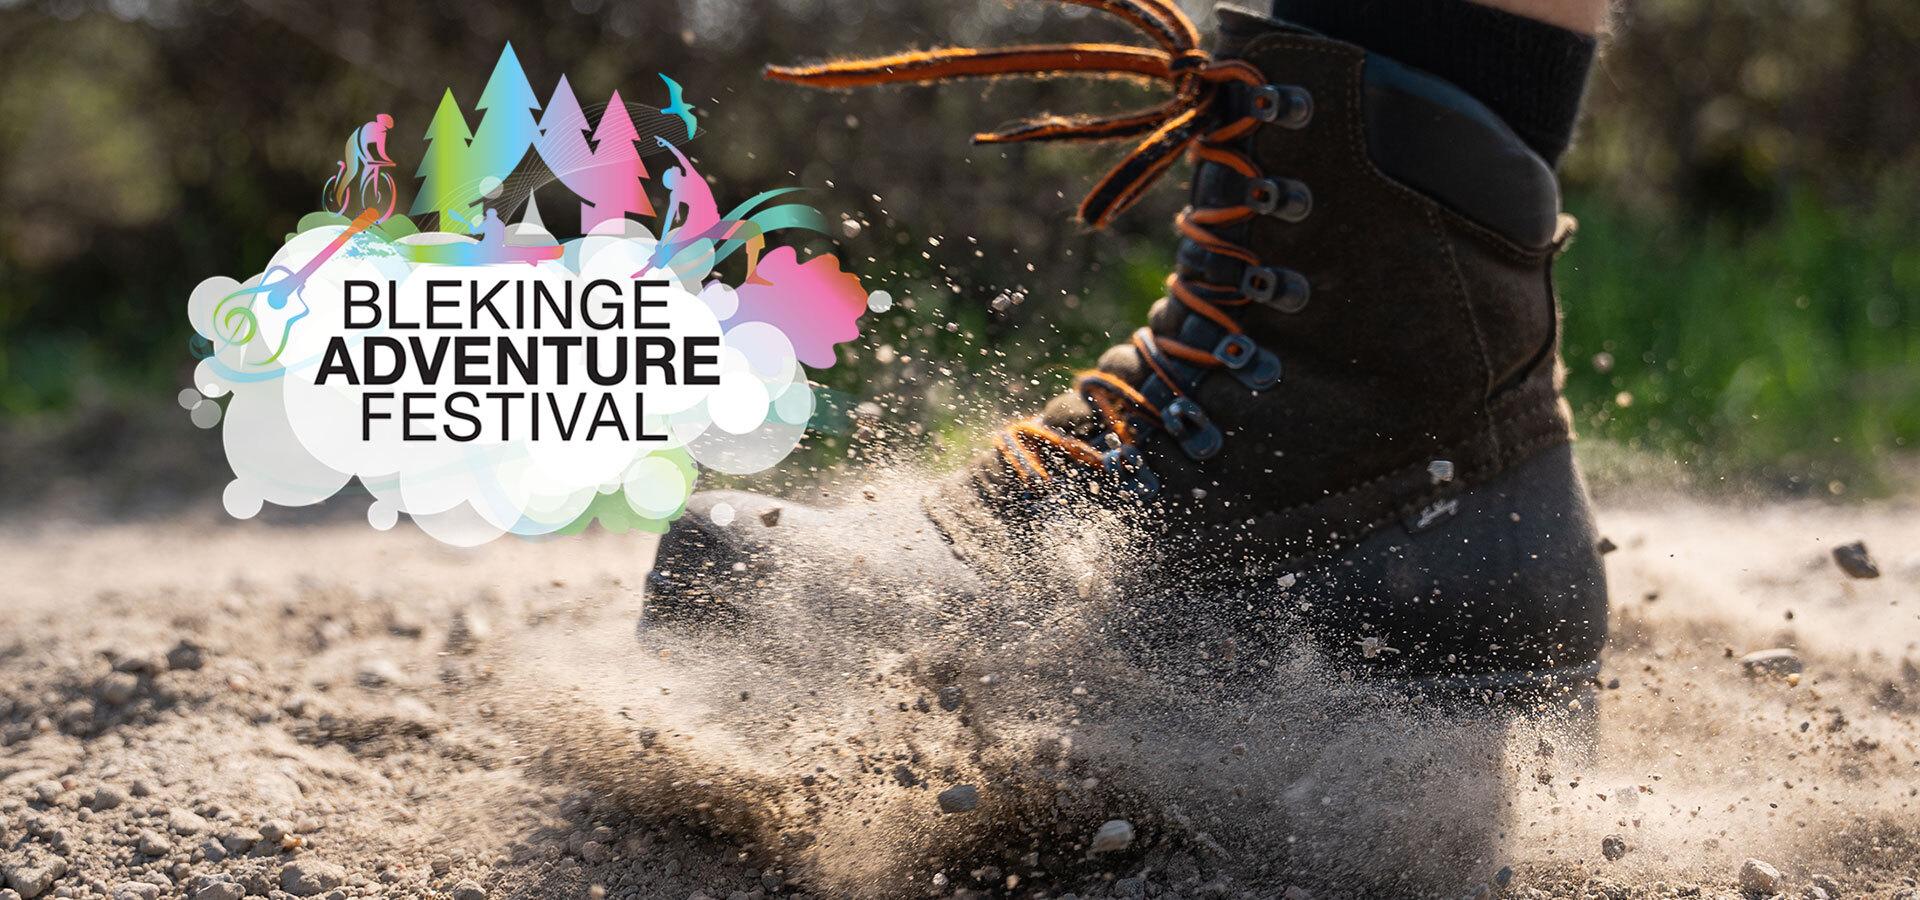 Blekinge adventure festival